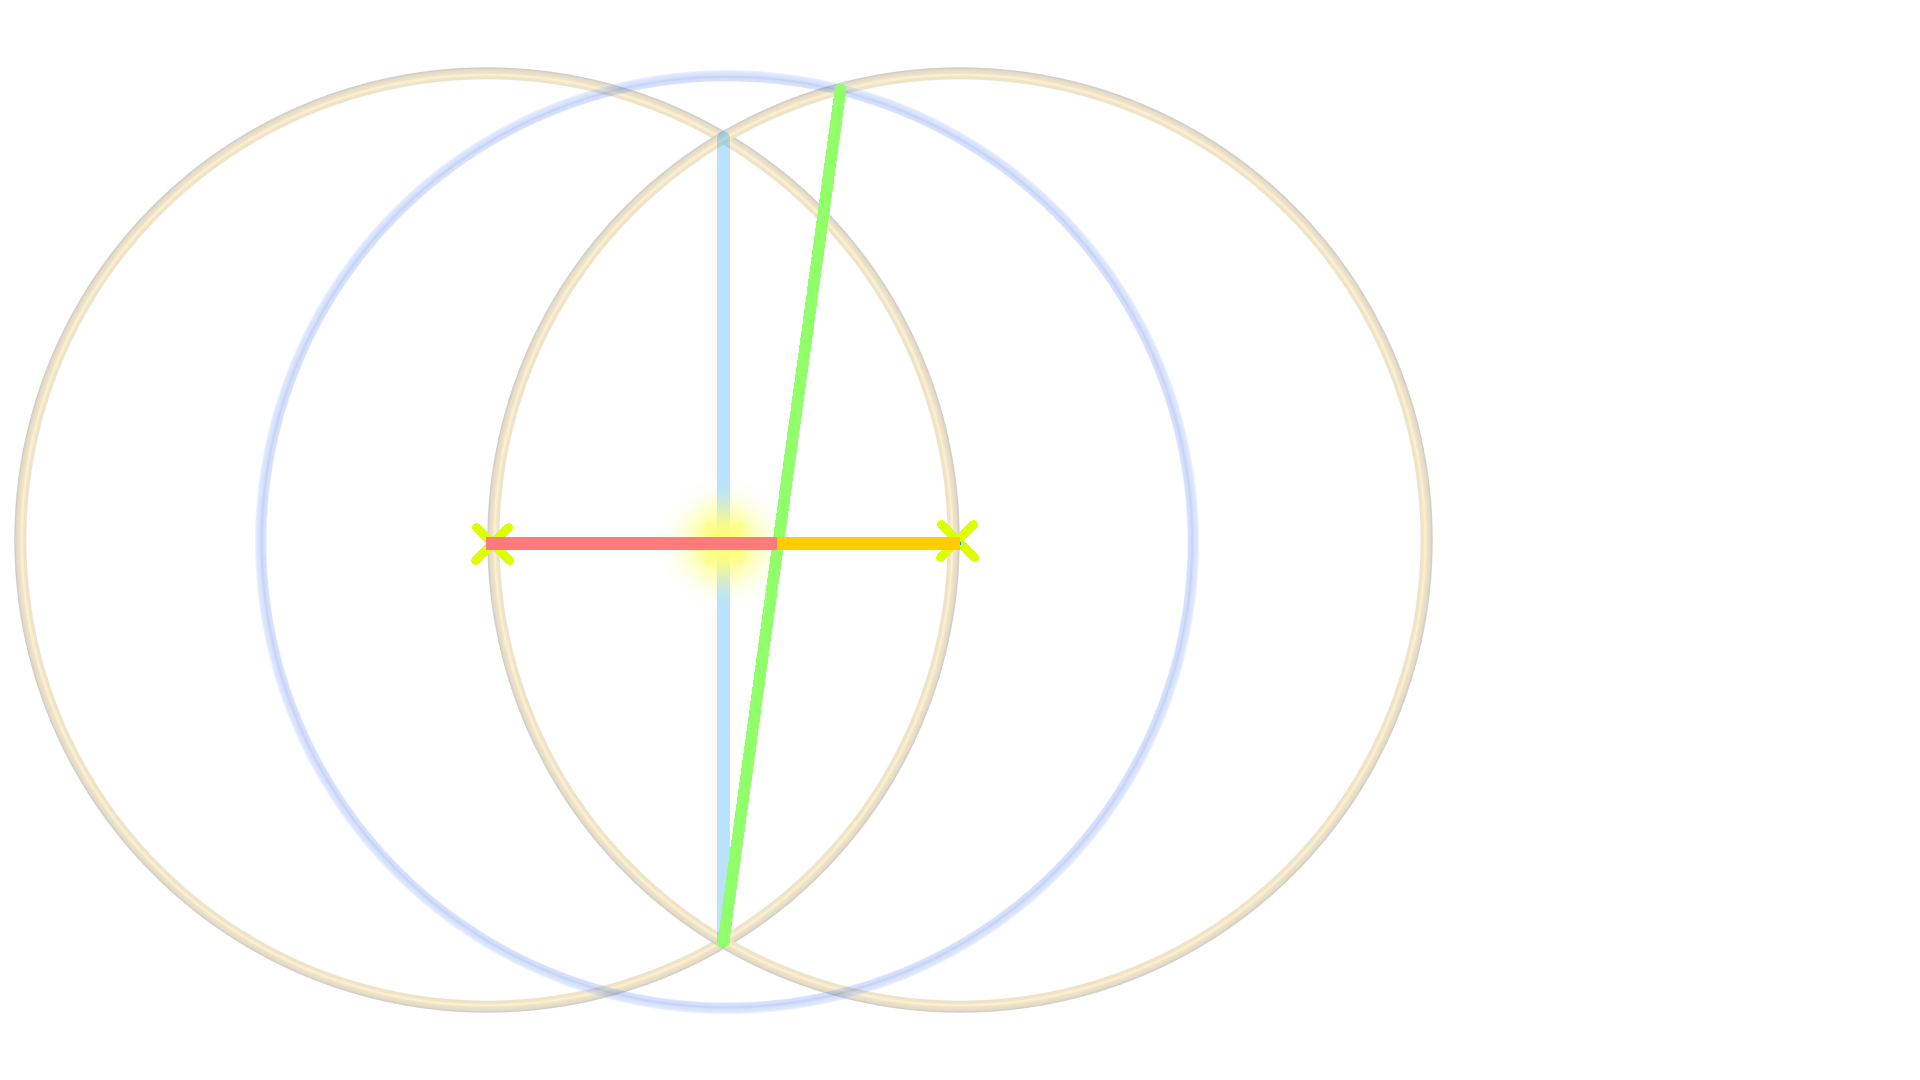 Bild zeigt 3 Kreise, 3 Linien, welche eine im goldenem Schnitt gekennzeichnet ist. Bedeutung der heiligen Geometrie